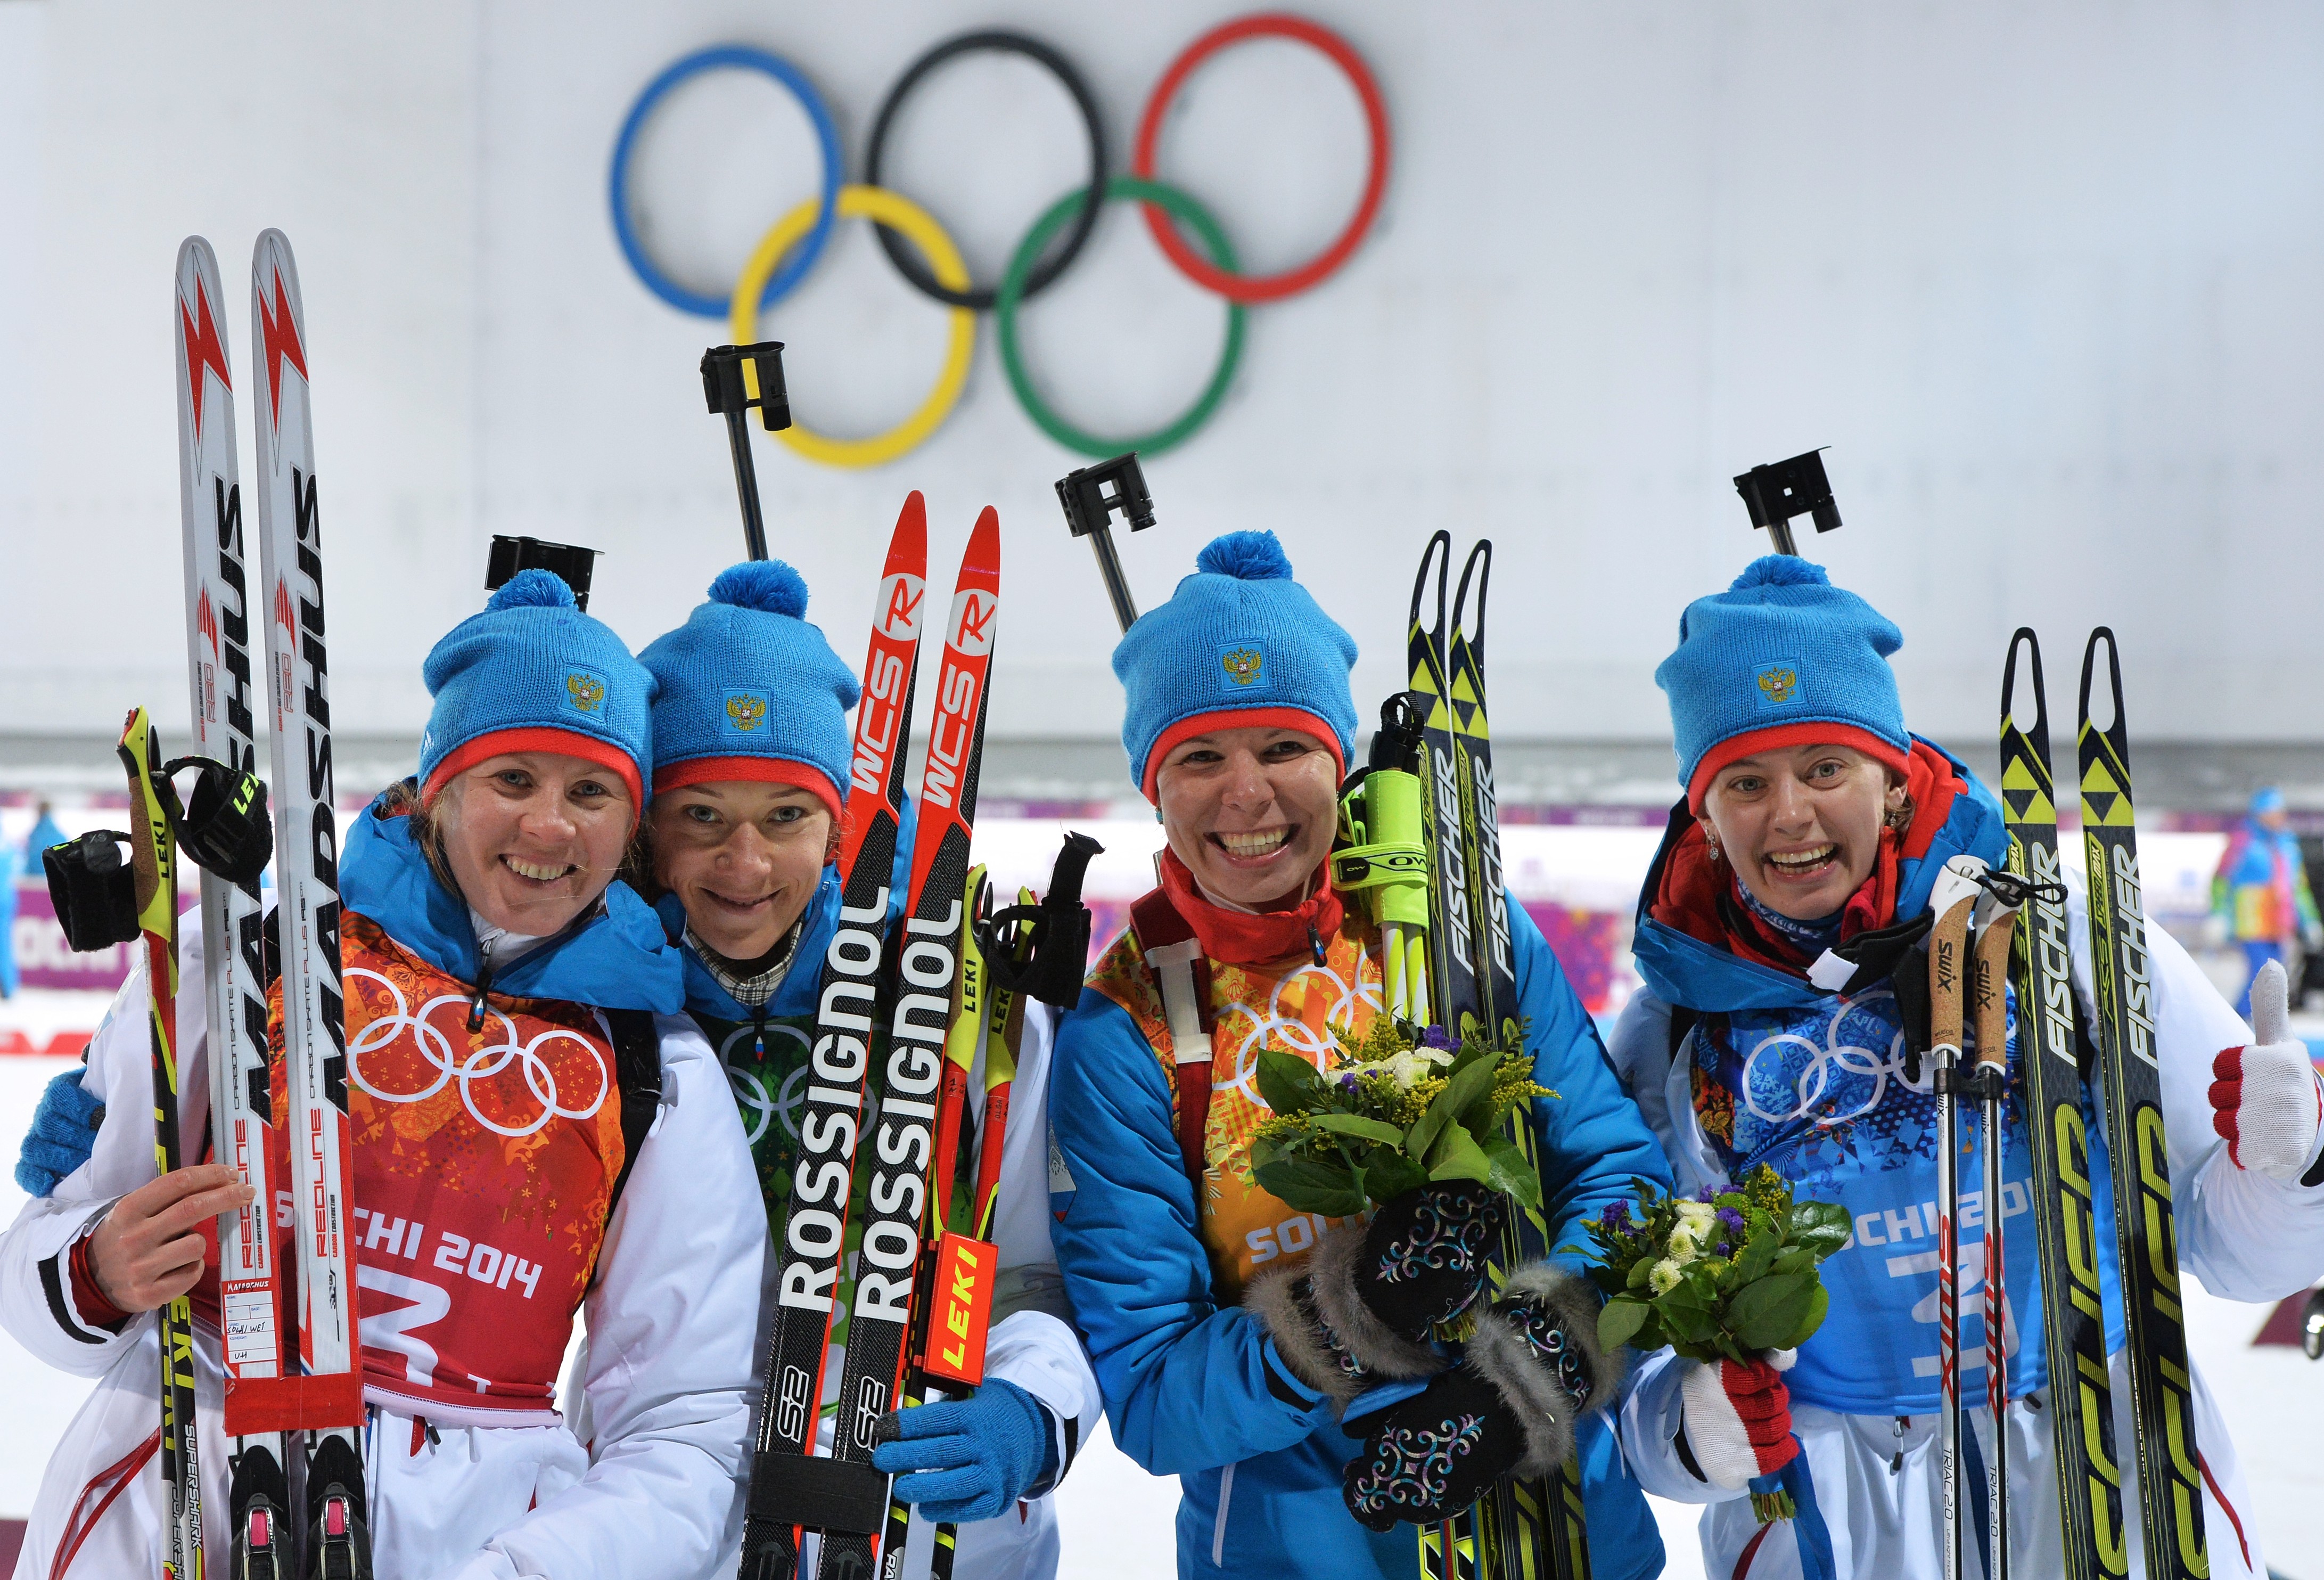 Несколько медалей Россия из-за обвинений в допинге на Олимпиаде в Сочи уже потеряла. Теперь могут копнуть глубже. Фото: © РИА Новости / Илья Питалёв